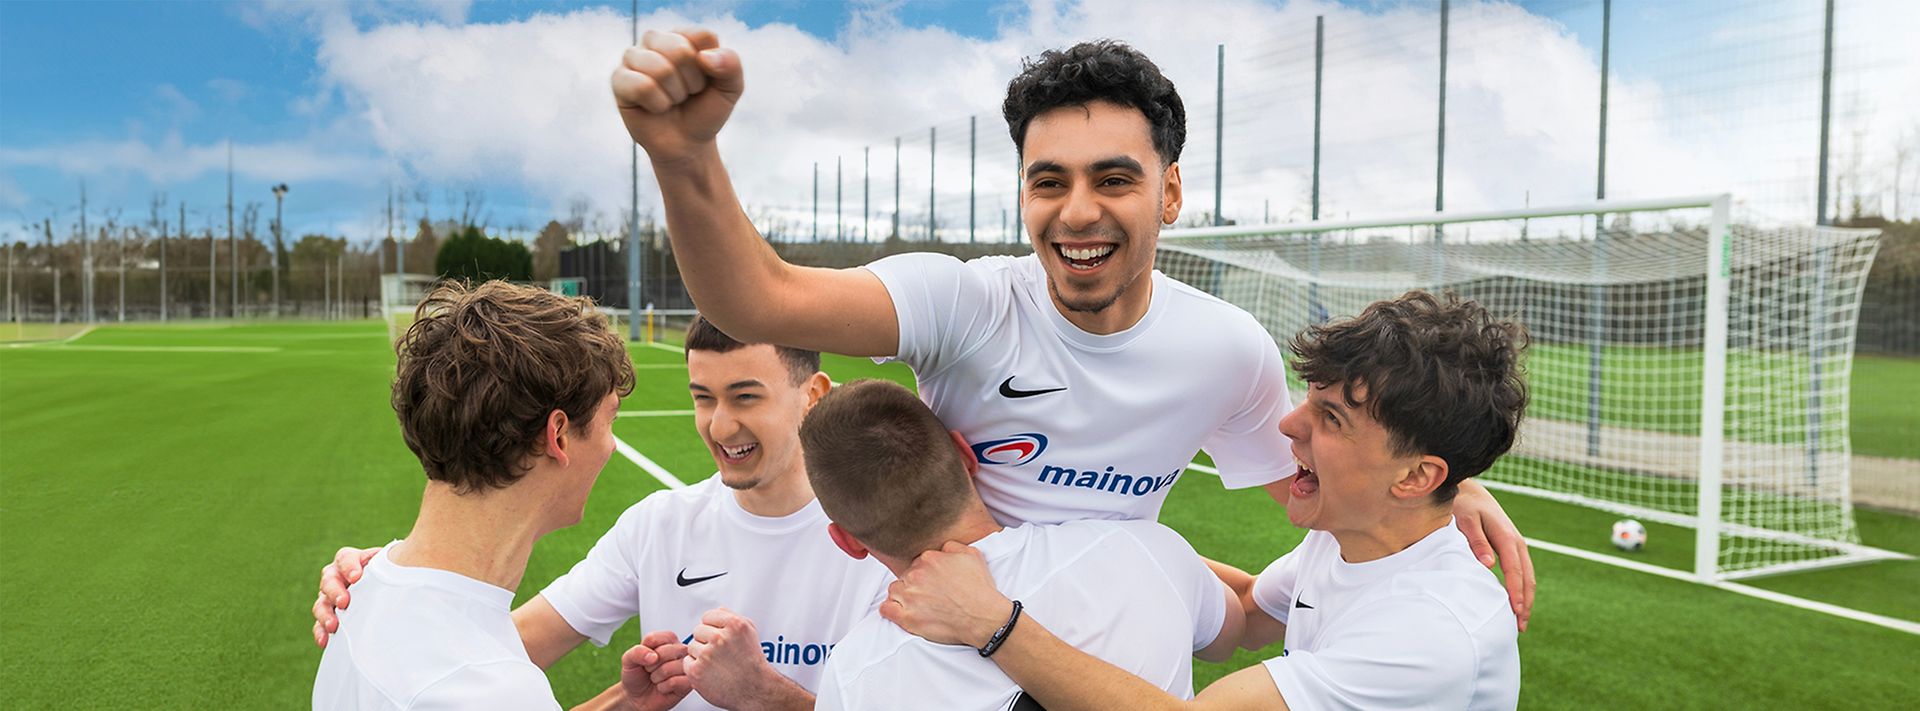 Jubelnde junge Männer beim Fußball mit weißen Mainova-Trikots